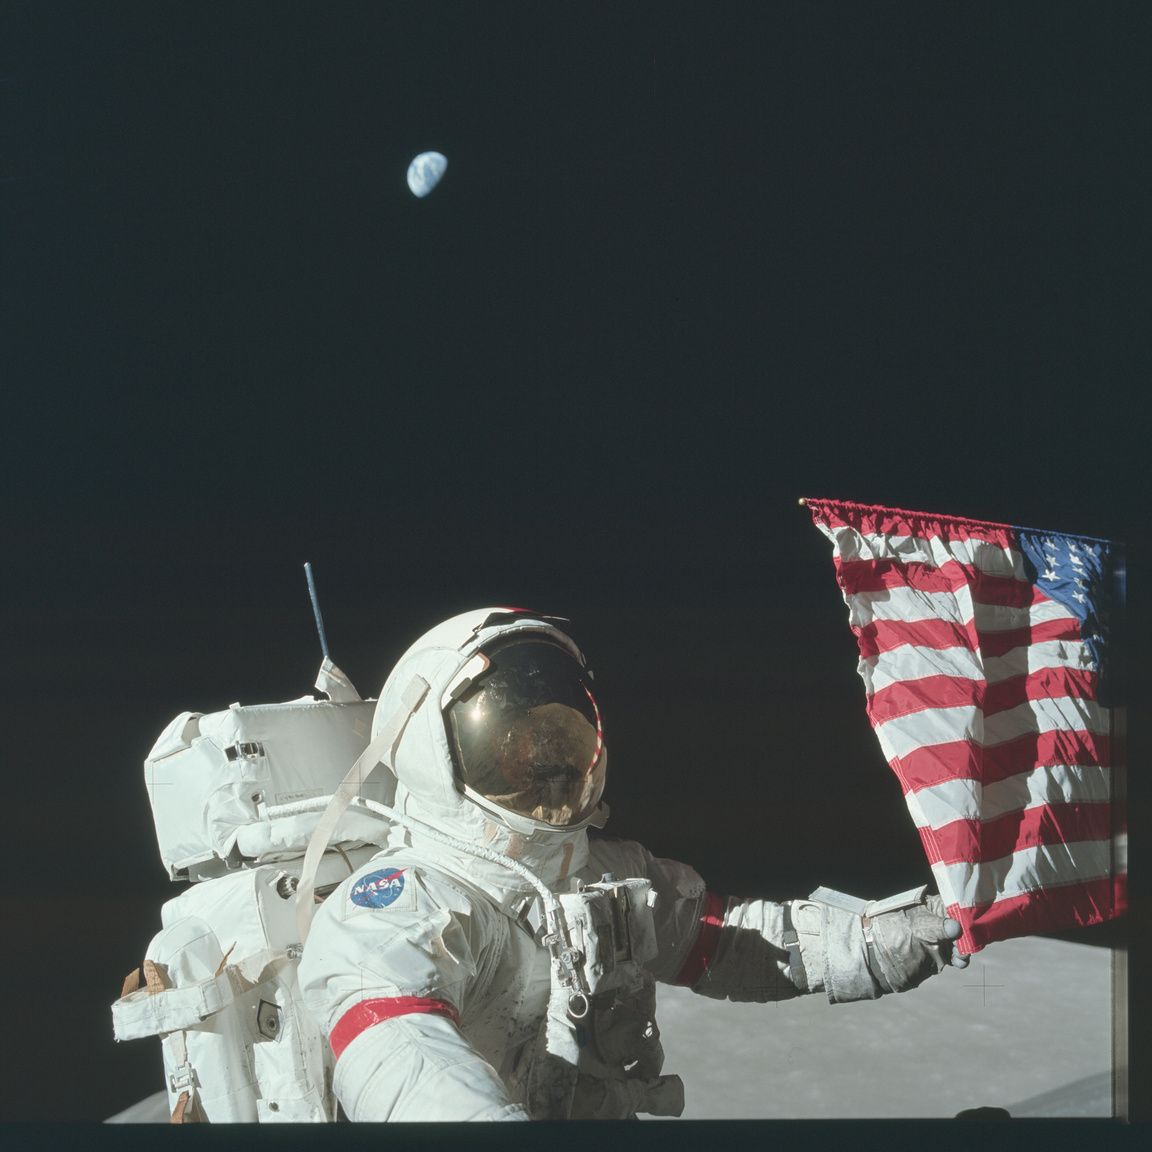 És a Holdon: Cernan megigazítja az Egyesült Államok zászlaját